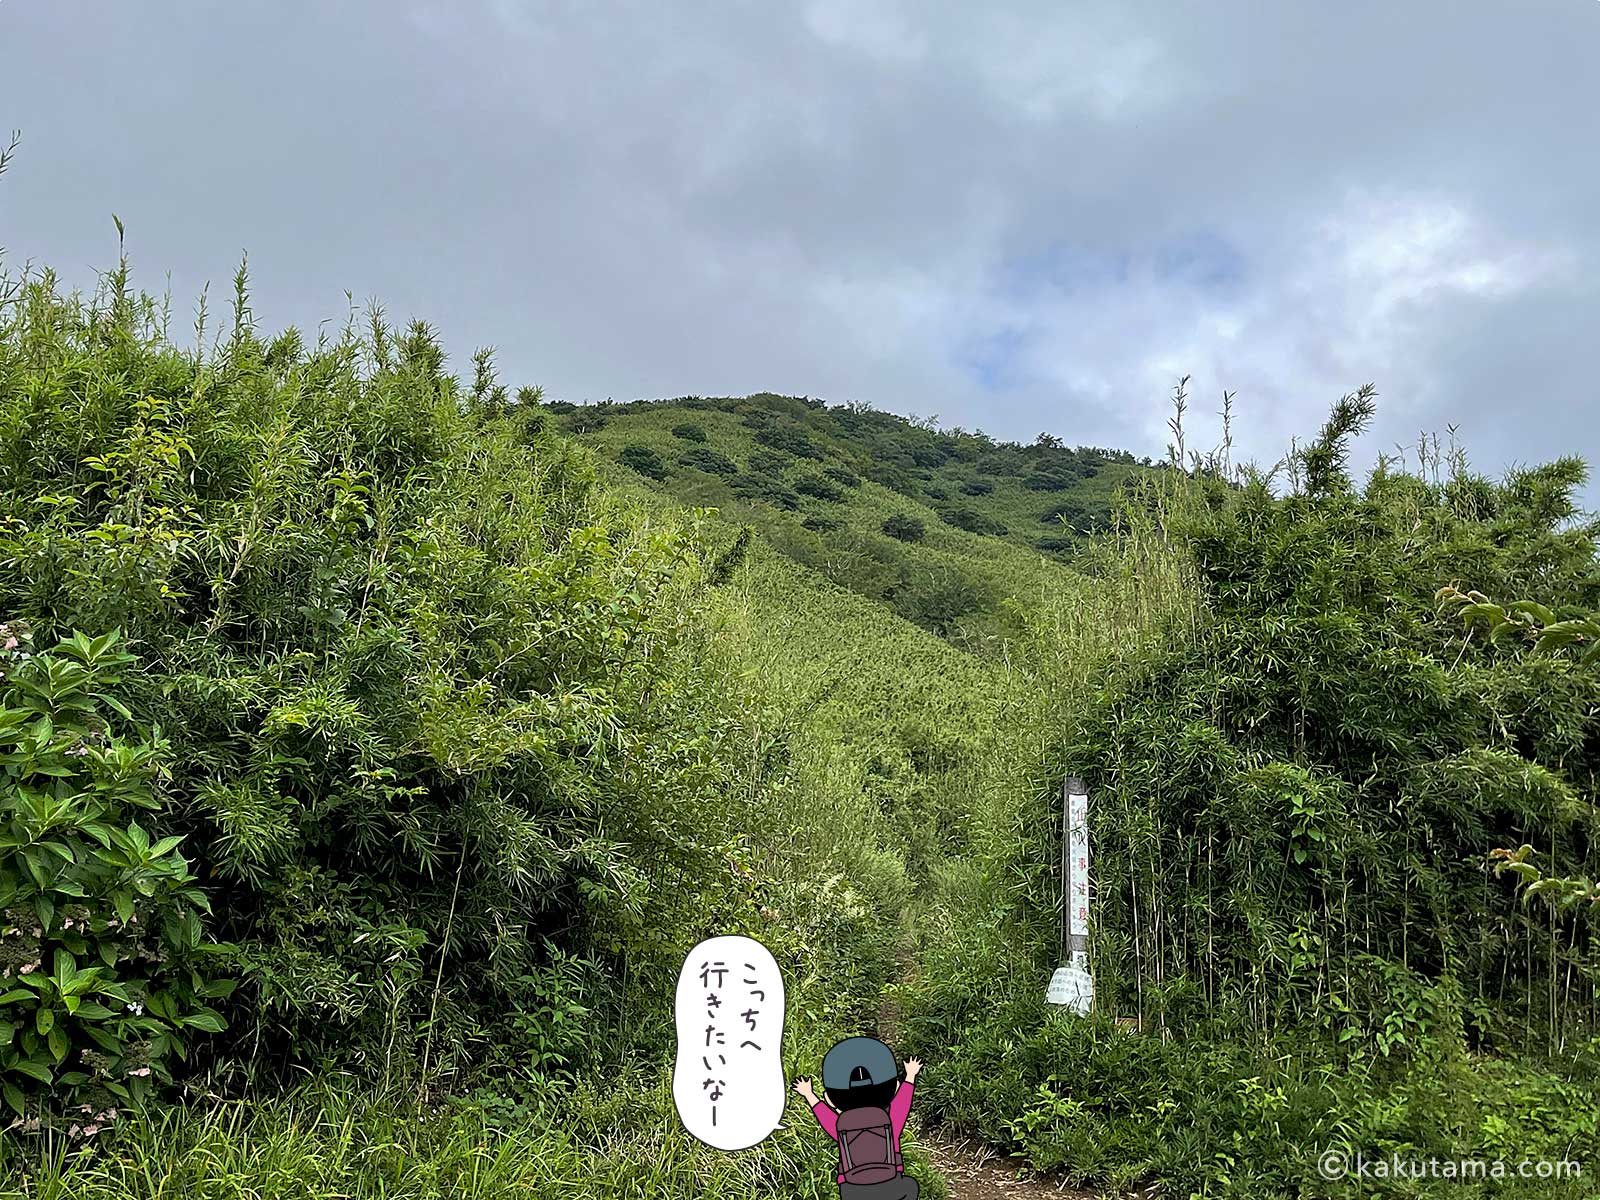 明神岳方面へ惹かれる写真と登山者のイラスト